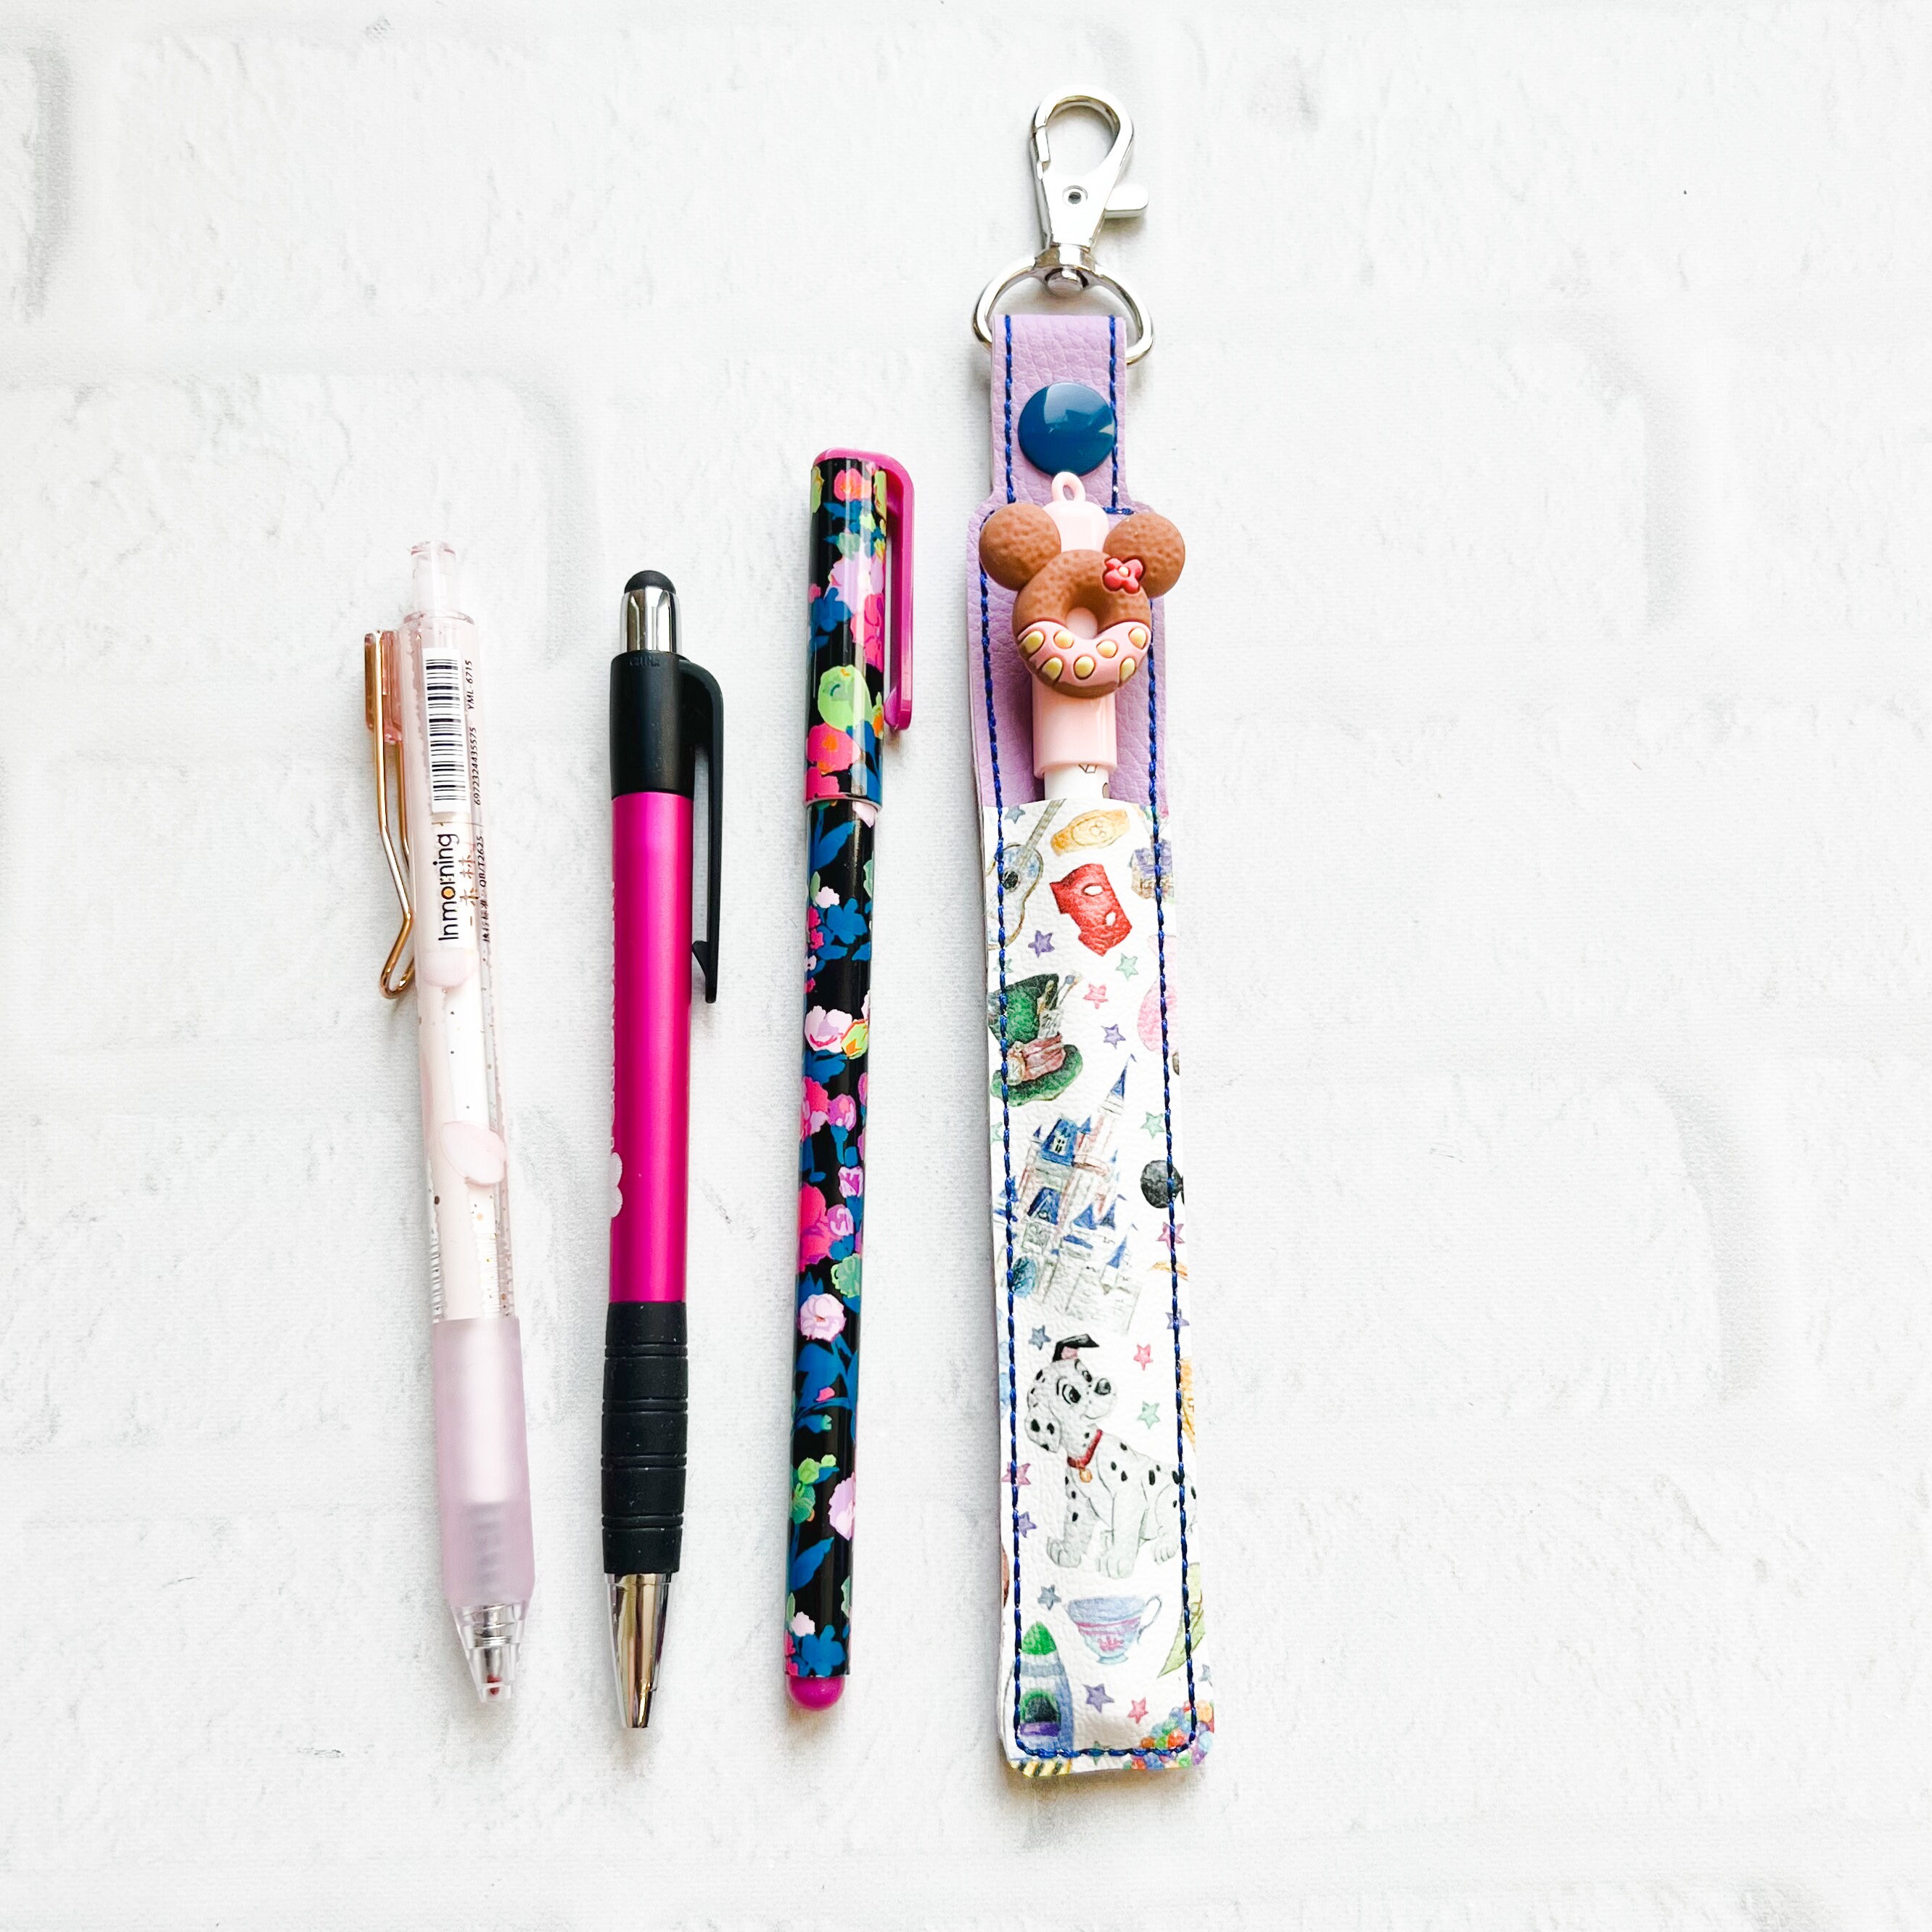 Clip on Pen Holder, Lanyard Fabric Pen Holder, Pen Pouch, Bag Clip on Pen  Storage, Pen Holder for Work, Pen Case, Teacher Gift 